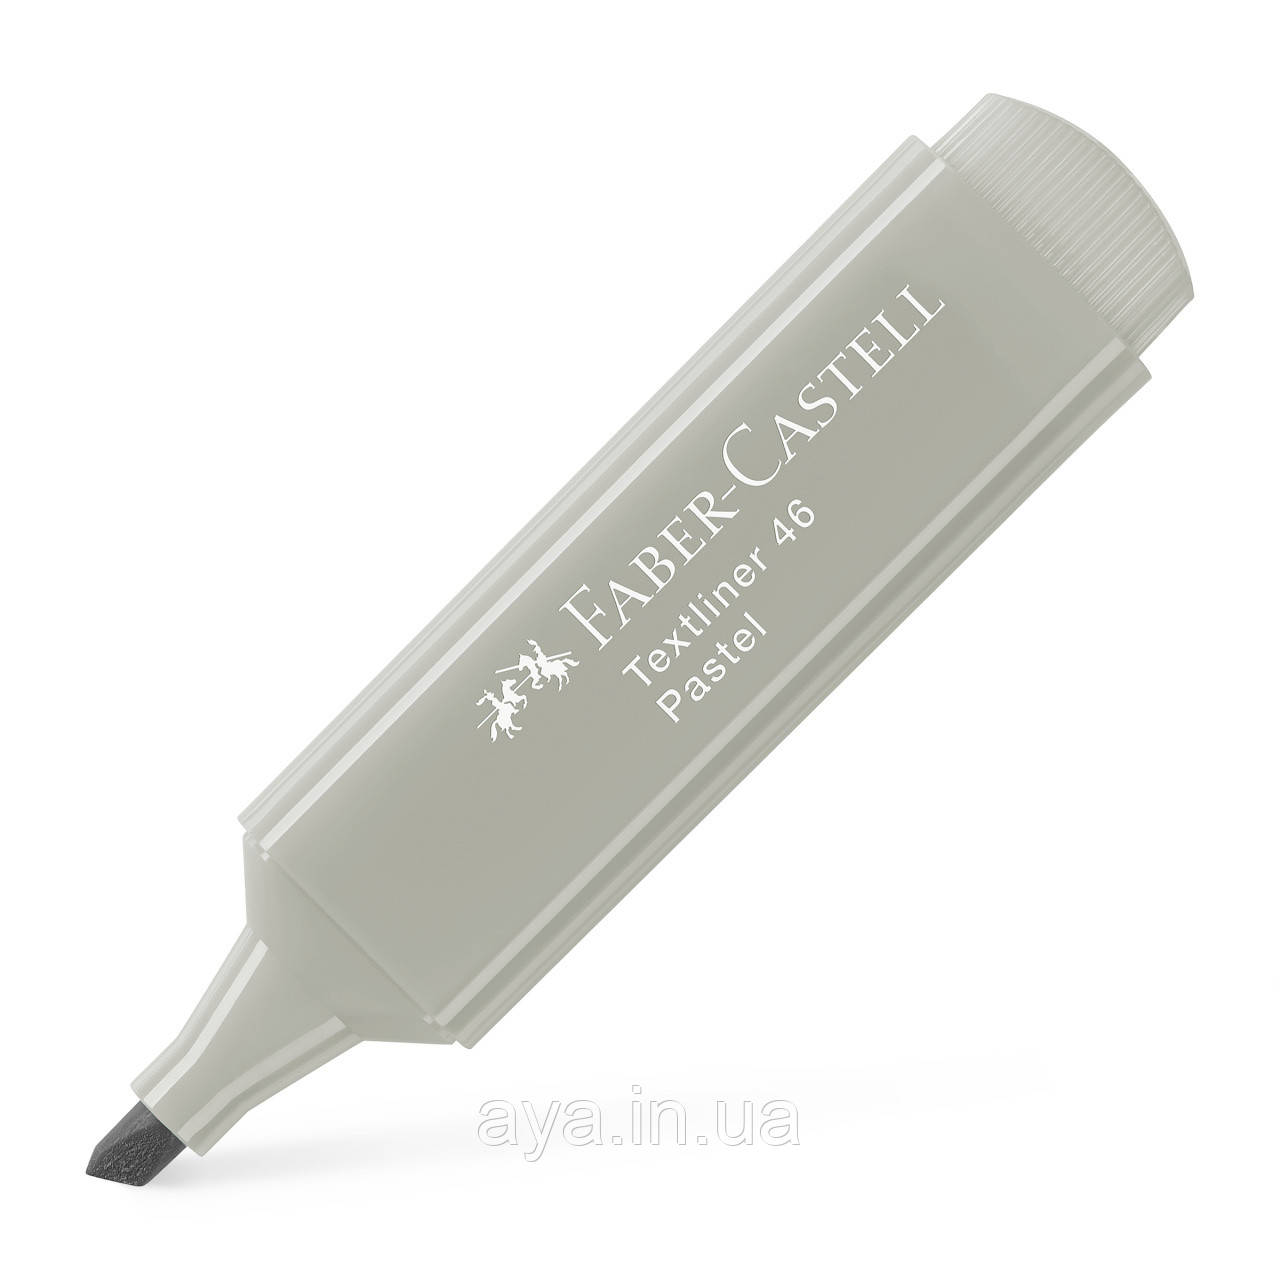 Текстовий маркер Faber-Castell Highlighter TL 46 Pastel, Сірий пастель